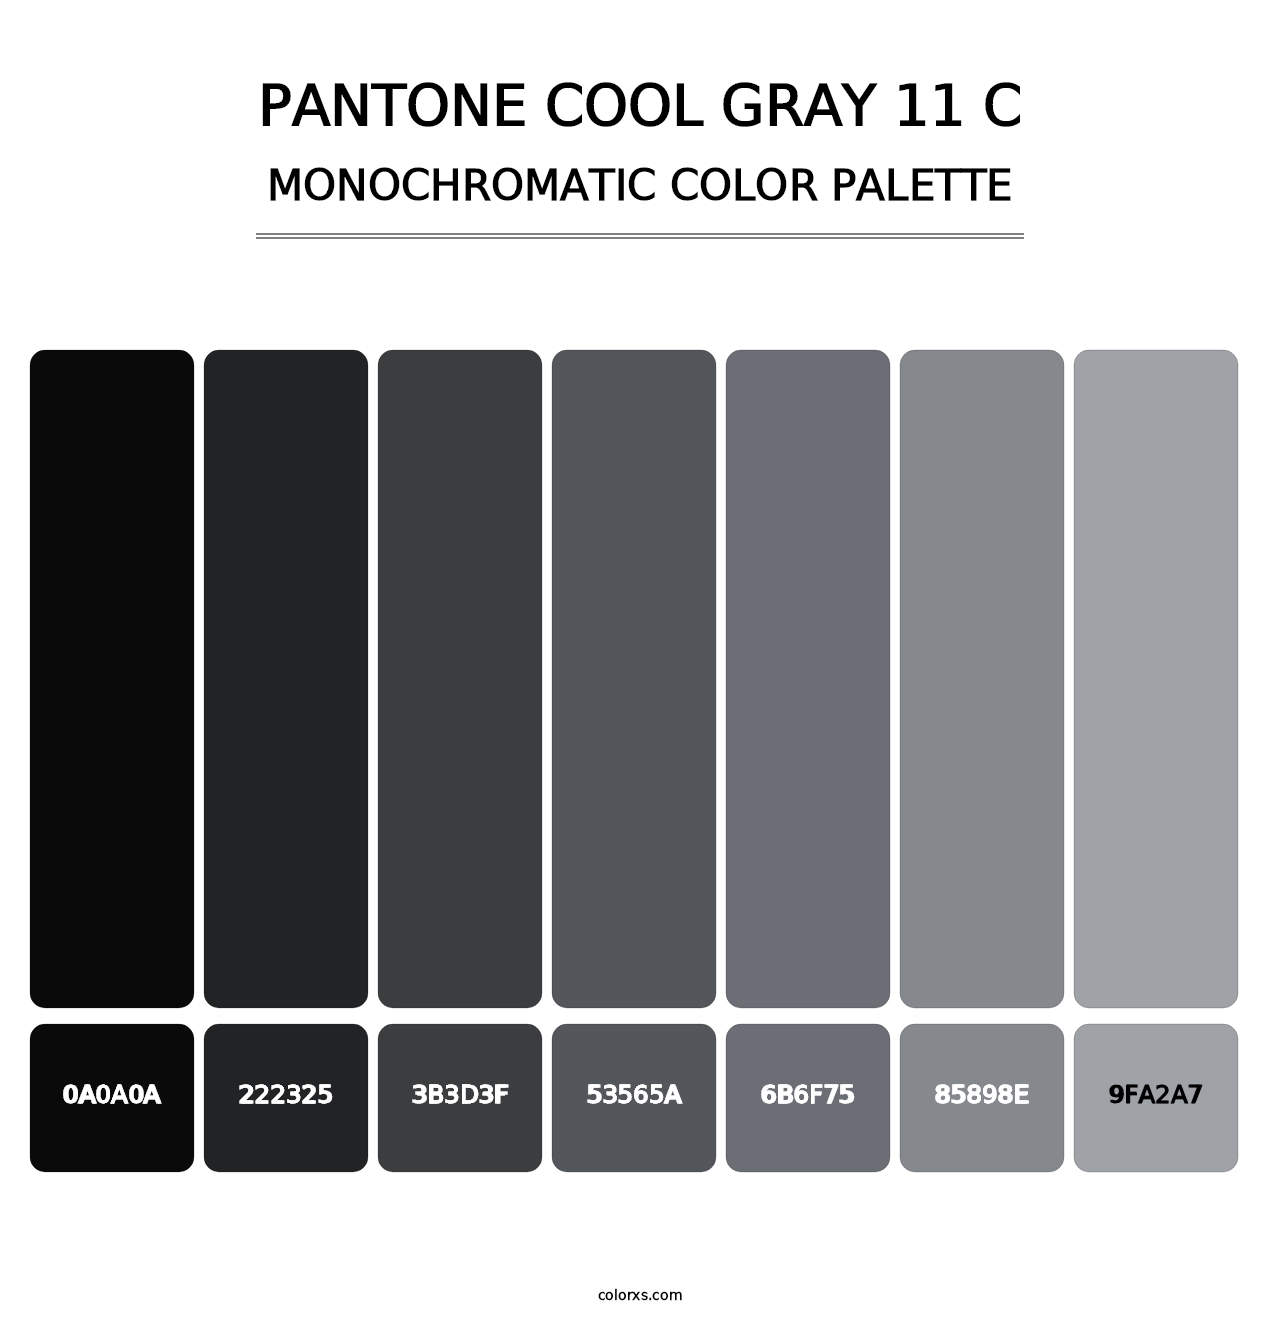 PANTONE Cool Gray 11 C - Monochromatic Color Palette